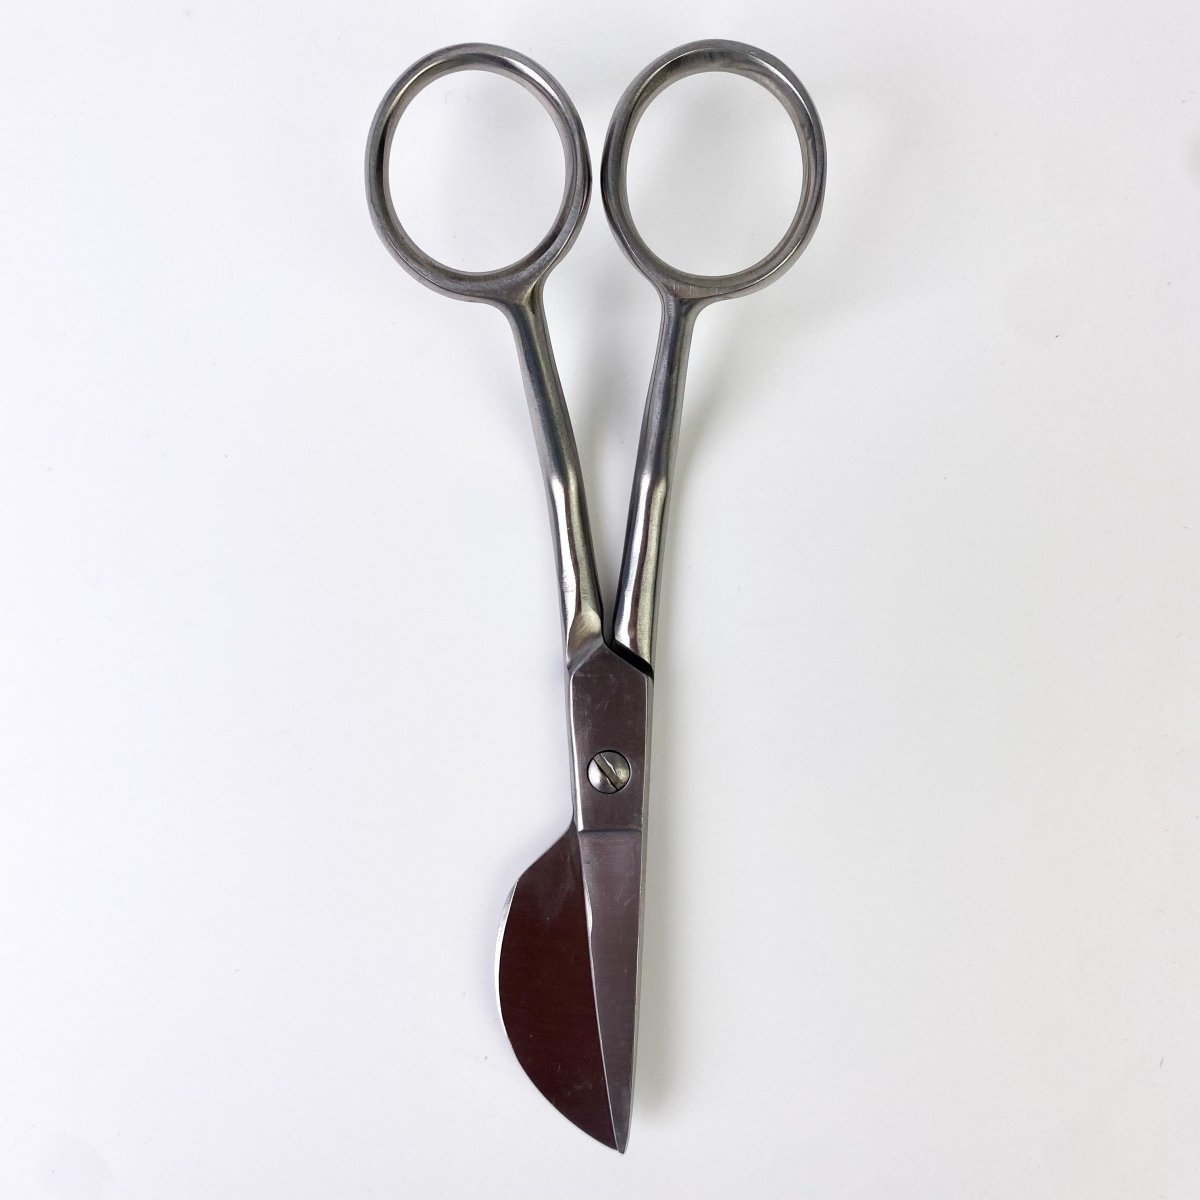 Klasse - Stainless Steel - Applique Scissors Duckbill